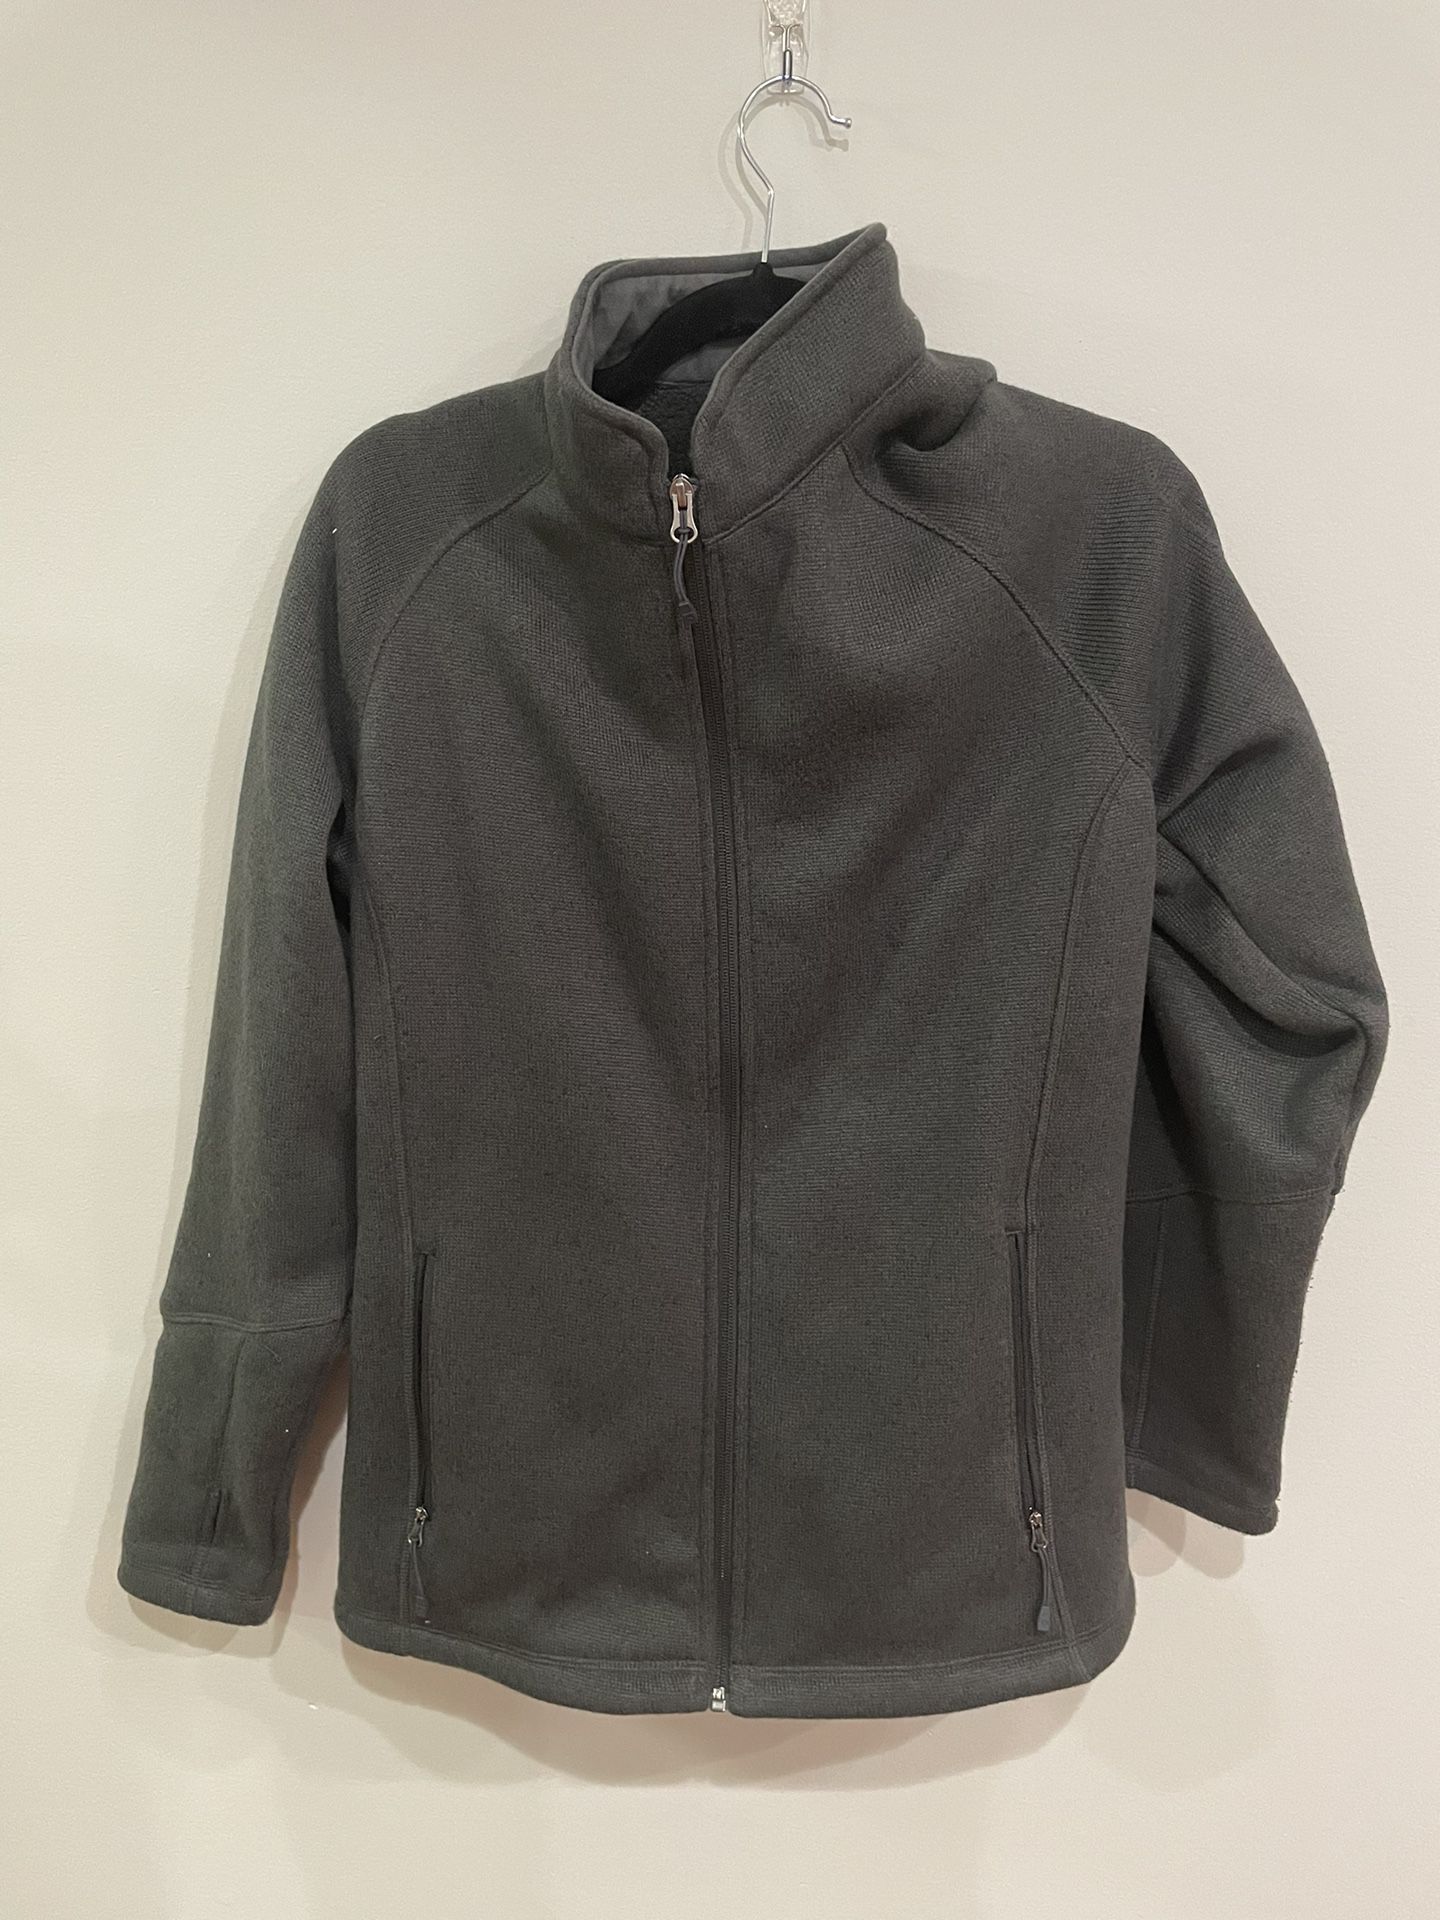 Women’s XL Storm Creek 4625 - Women's Sweaterfleece Jacket 'Celine' Black Winter